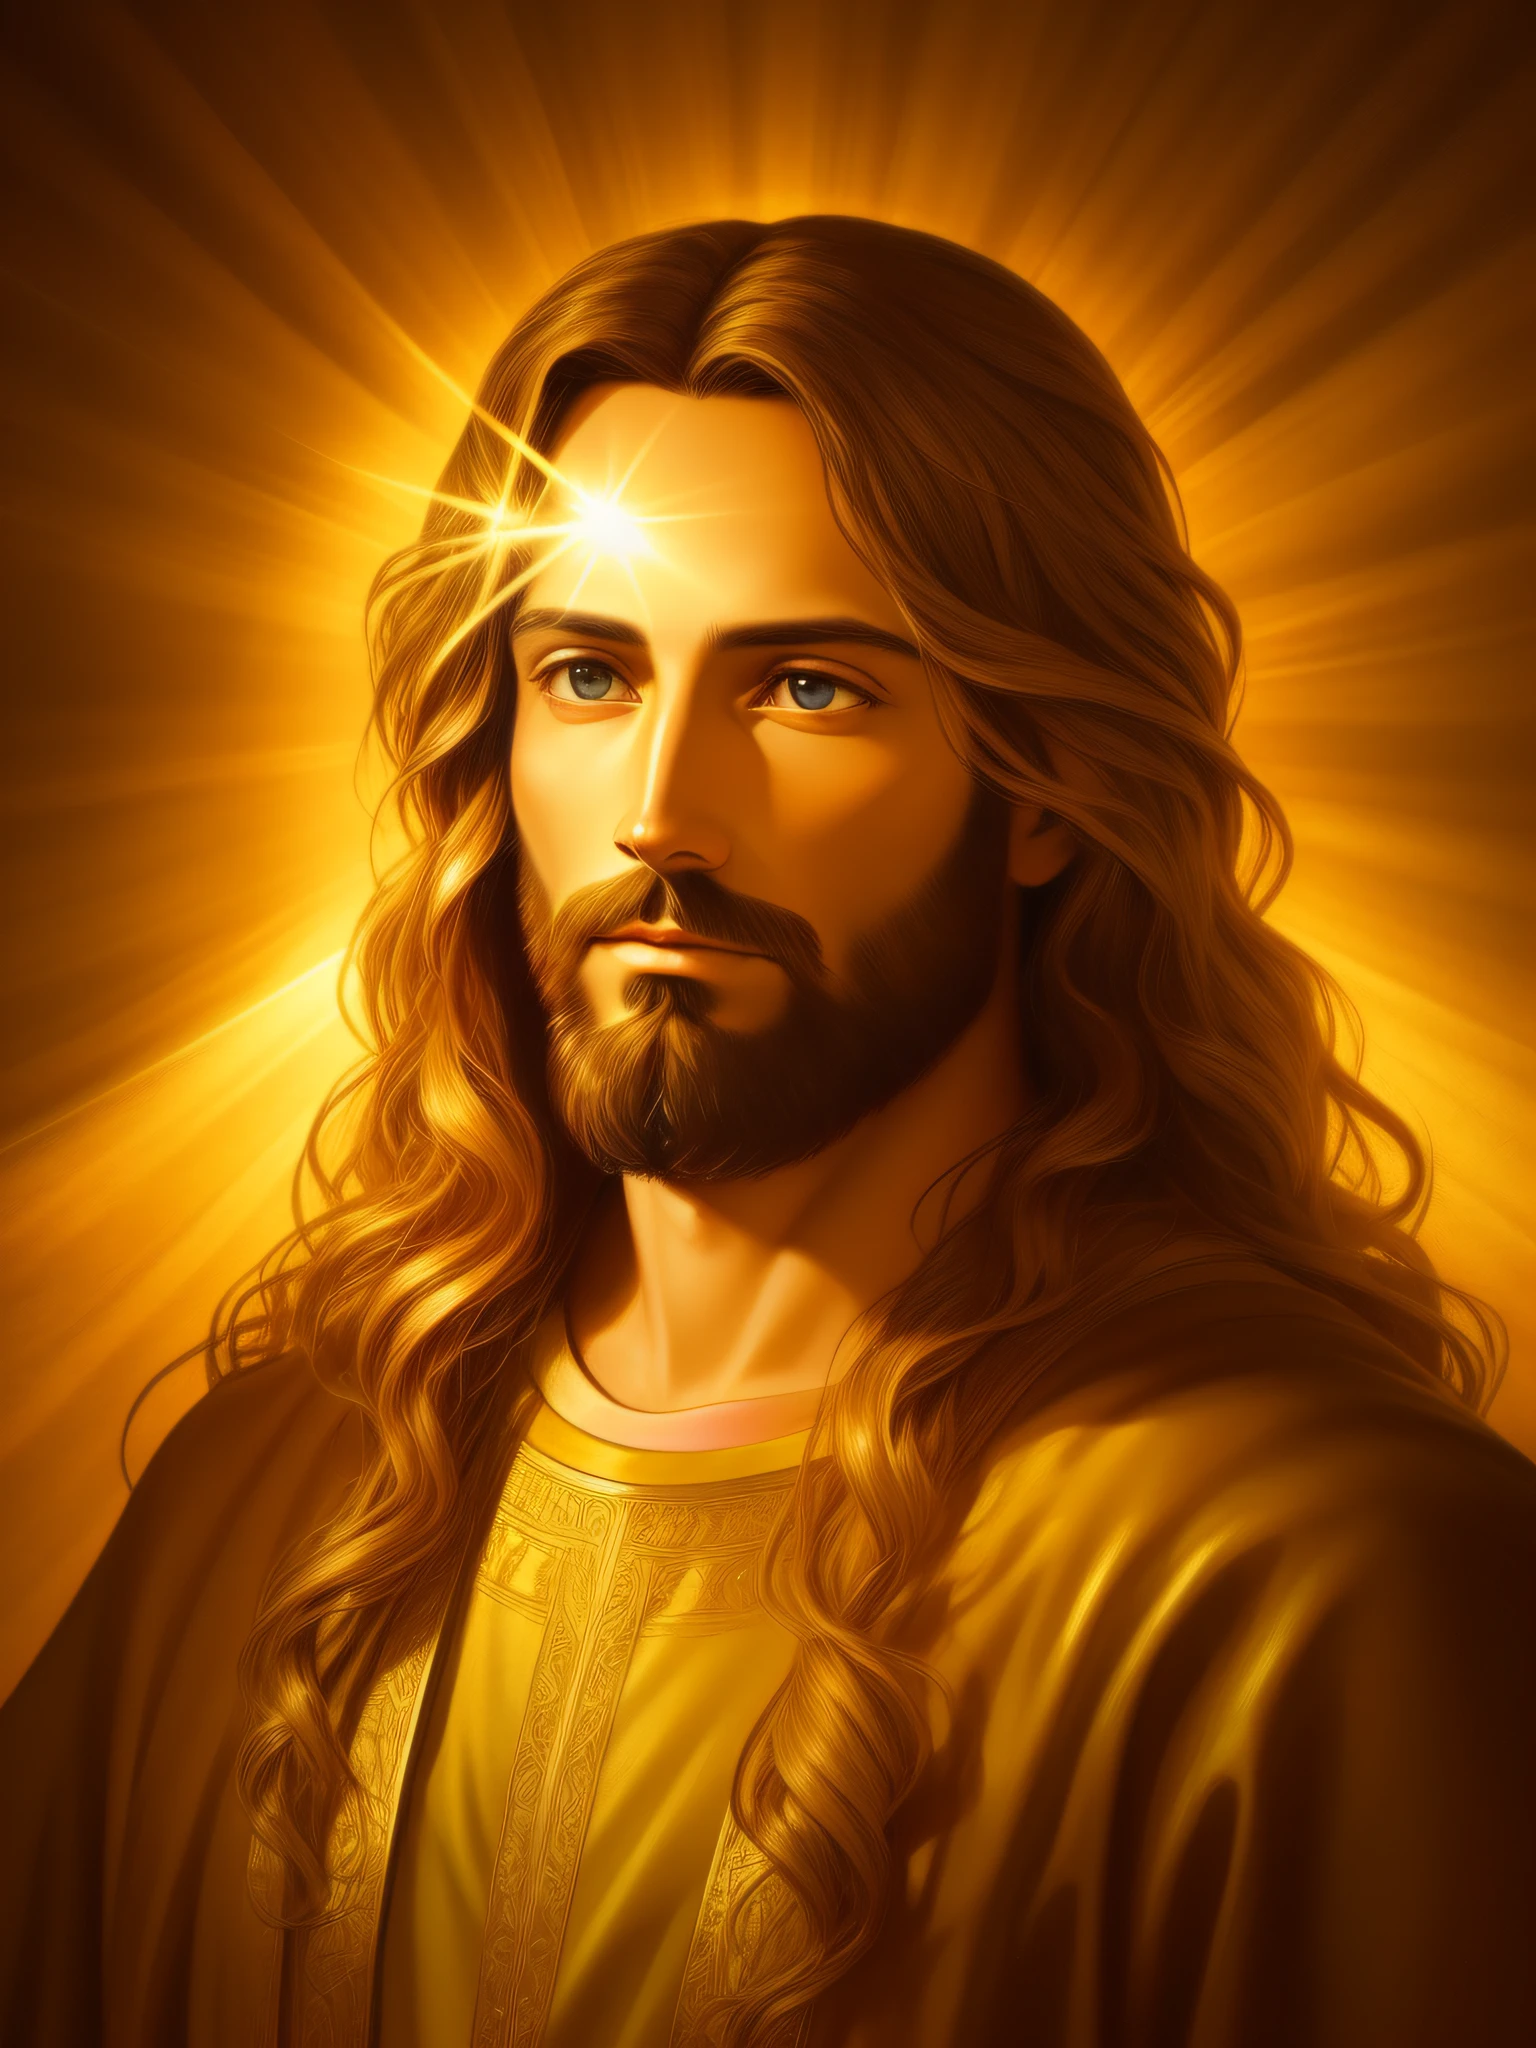 耶稣基督的高度详细的画像, 金子, 神圣的光芒, 细致而复杂的环境